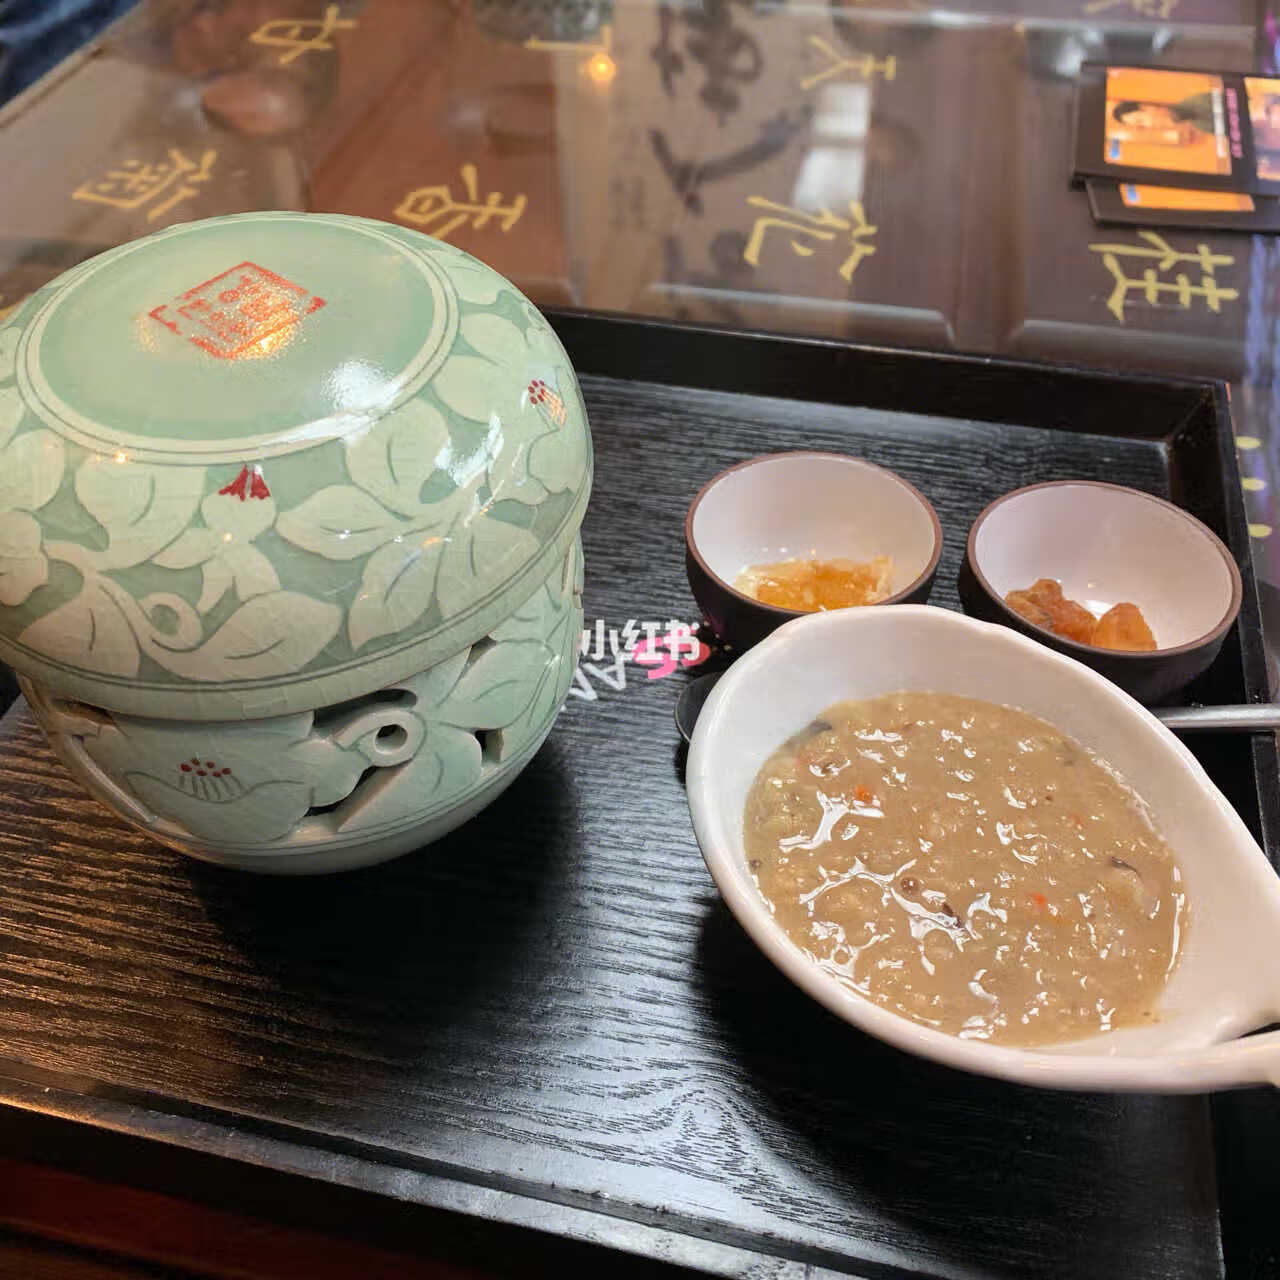 暖冬推荐补气血的韩国传统茶-双和茶 去东大门的时候偶然看到了这个双花茶套餐。 